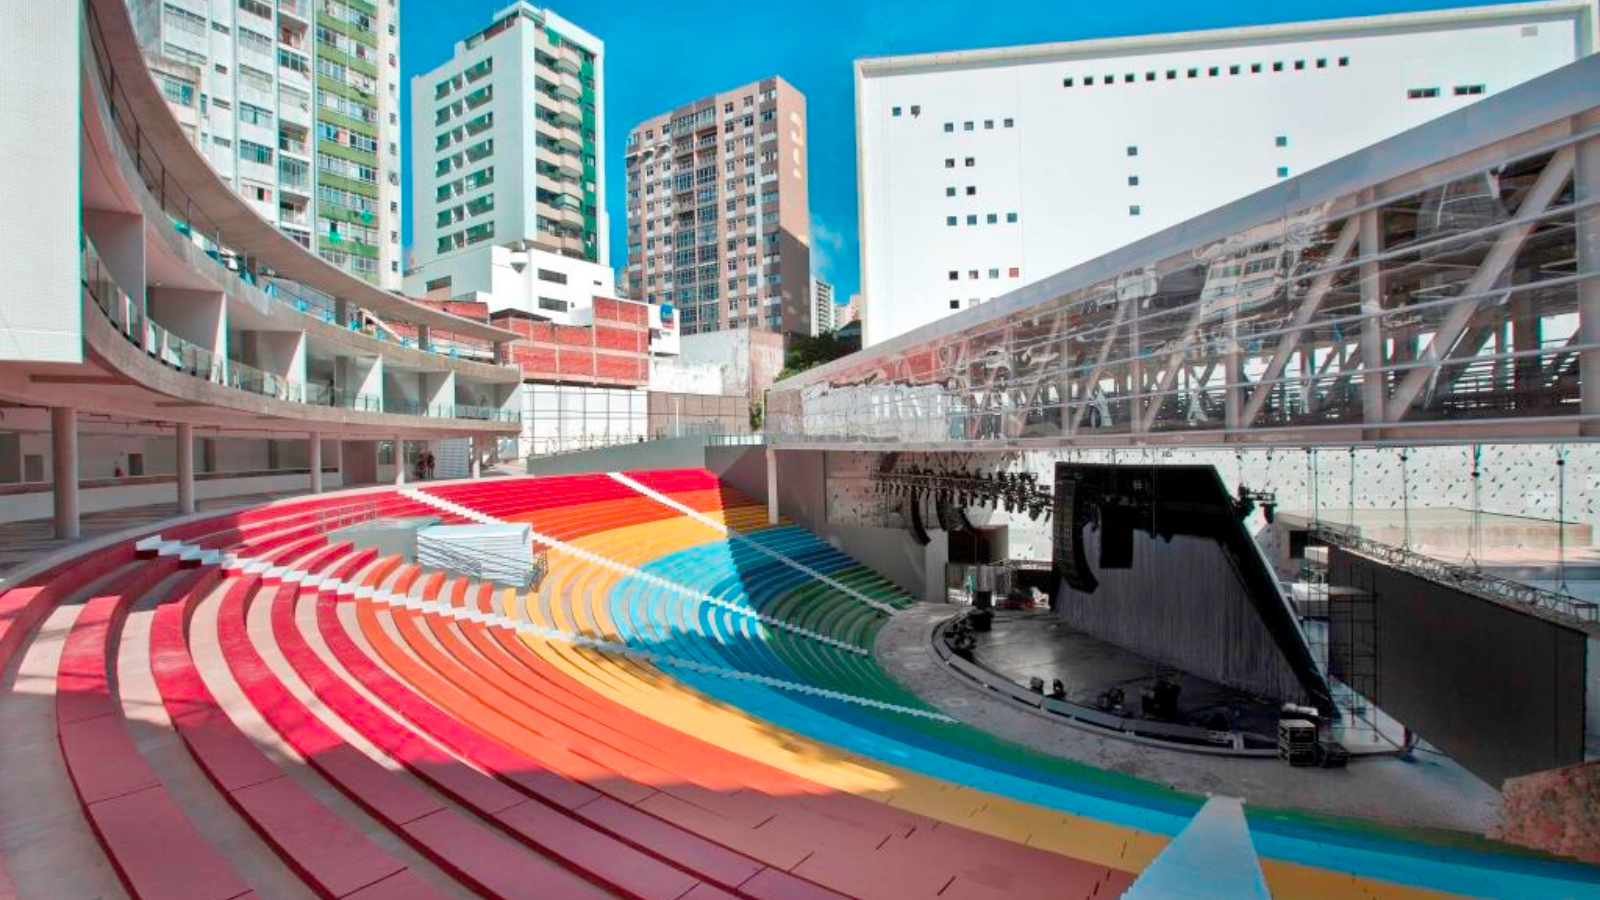 Fotografia colorida da Concha Acústica em Salvador